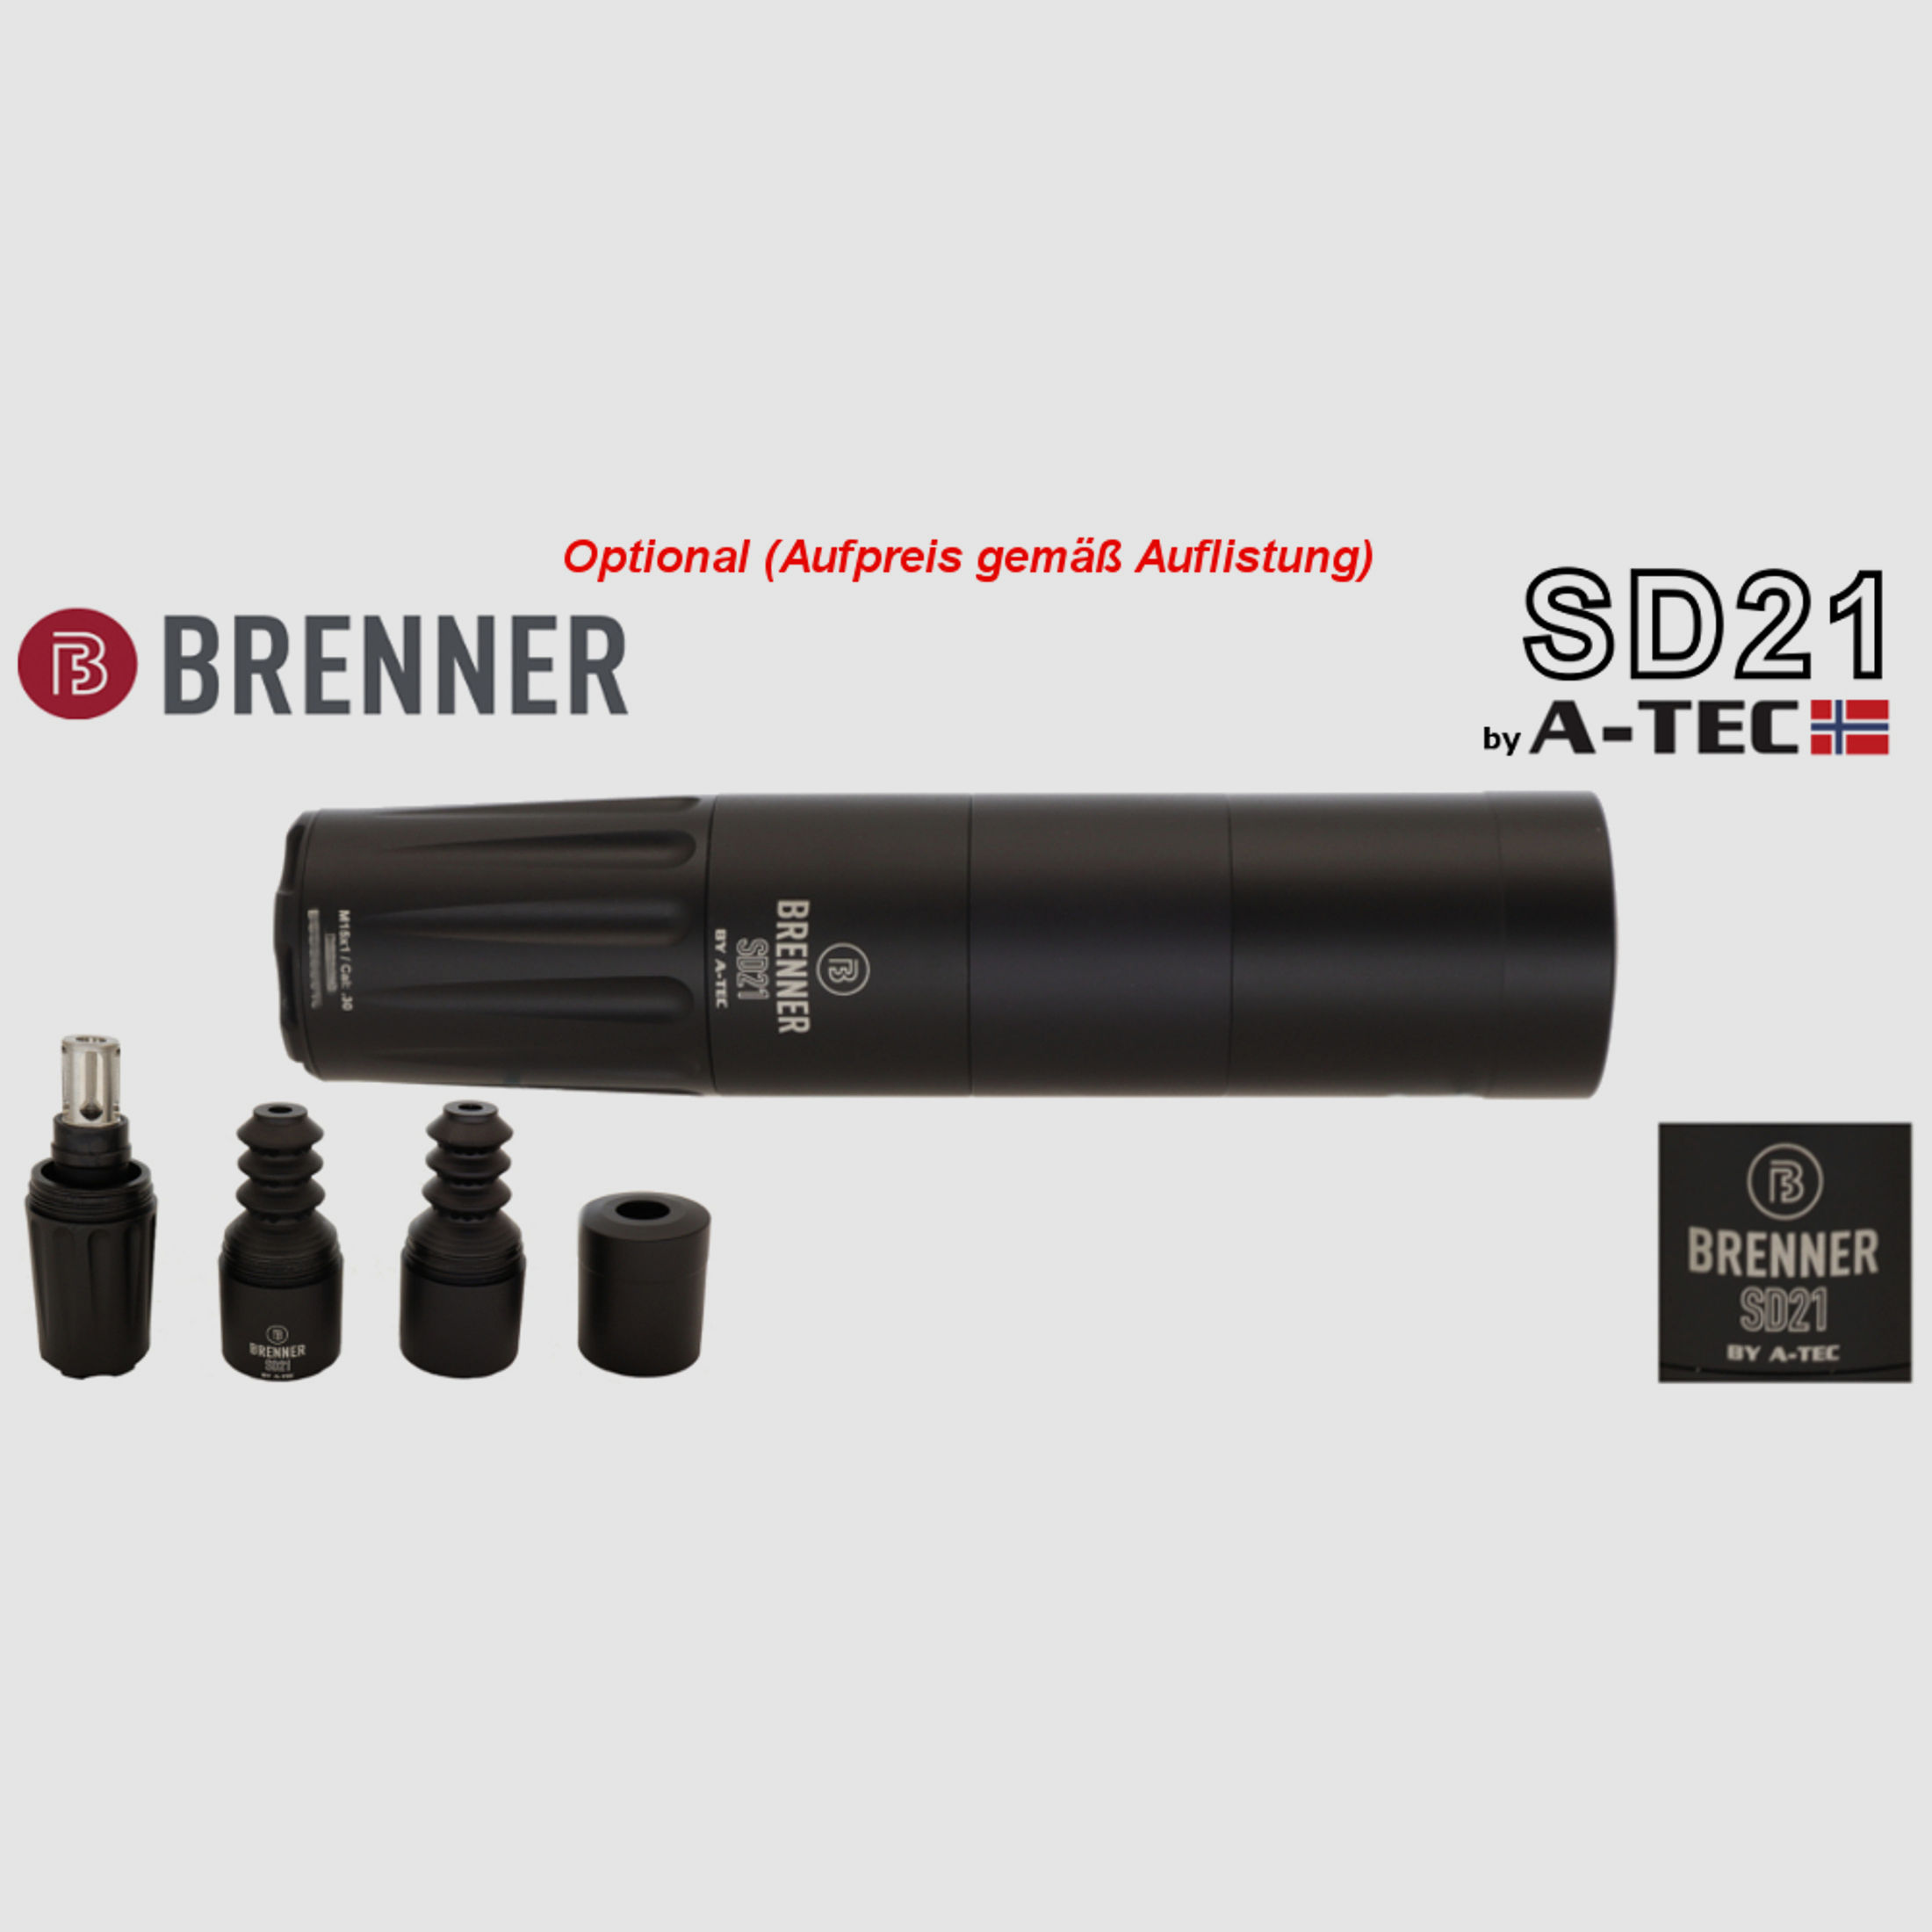 Komplettpaket: Brenner BR 20 B&H Prohunter Flex Lochschaft mit doppelter Verstellung inkl. Steiner 3-12x56 (Art.Nr.: BR20PHFP9) Finanzierung möglich